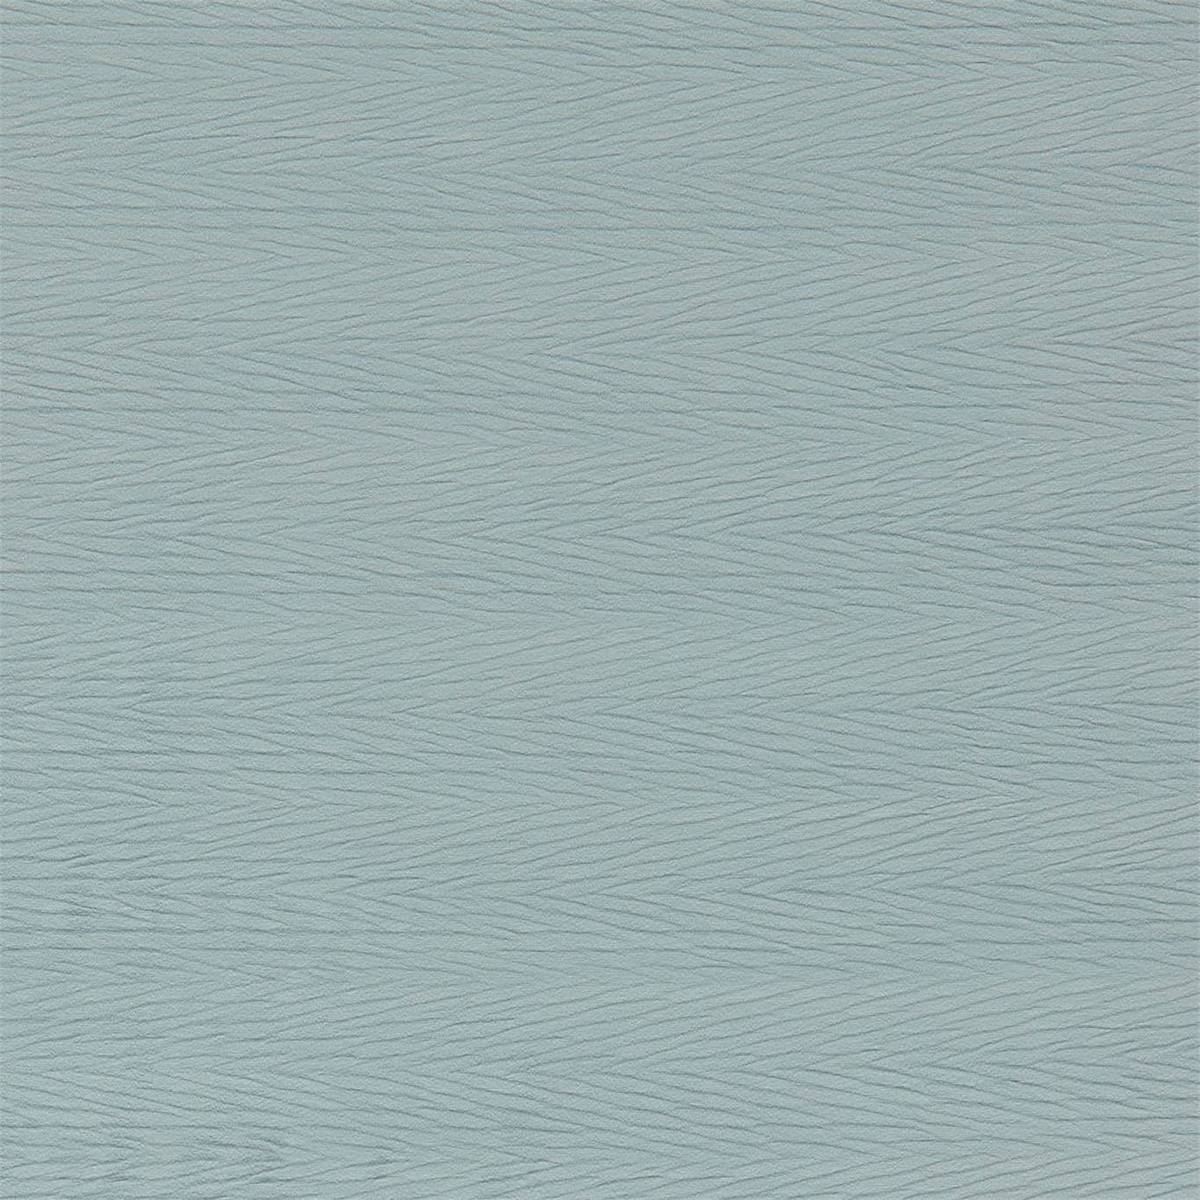 Florio Glacier Fabric by Harlequin